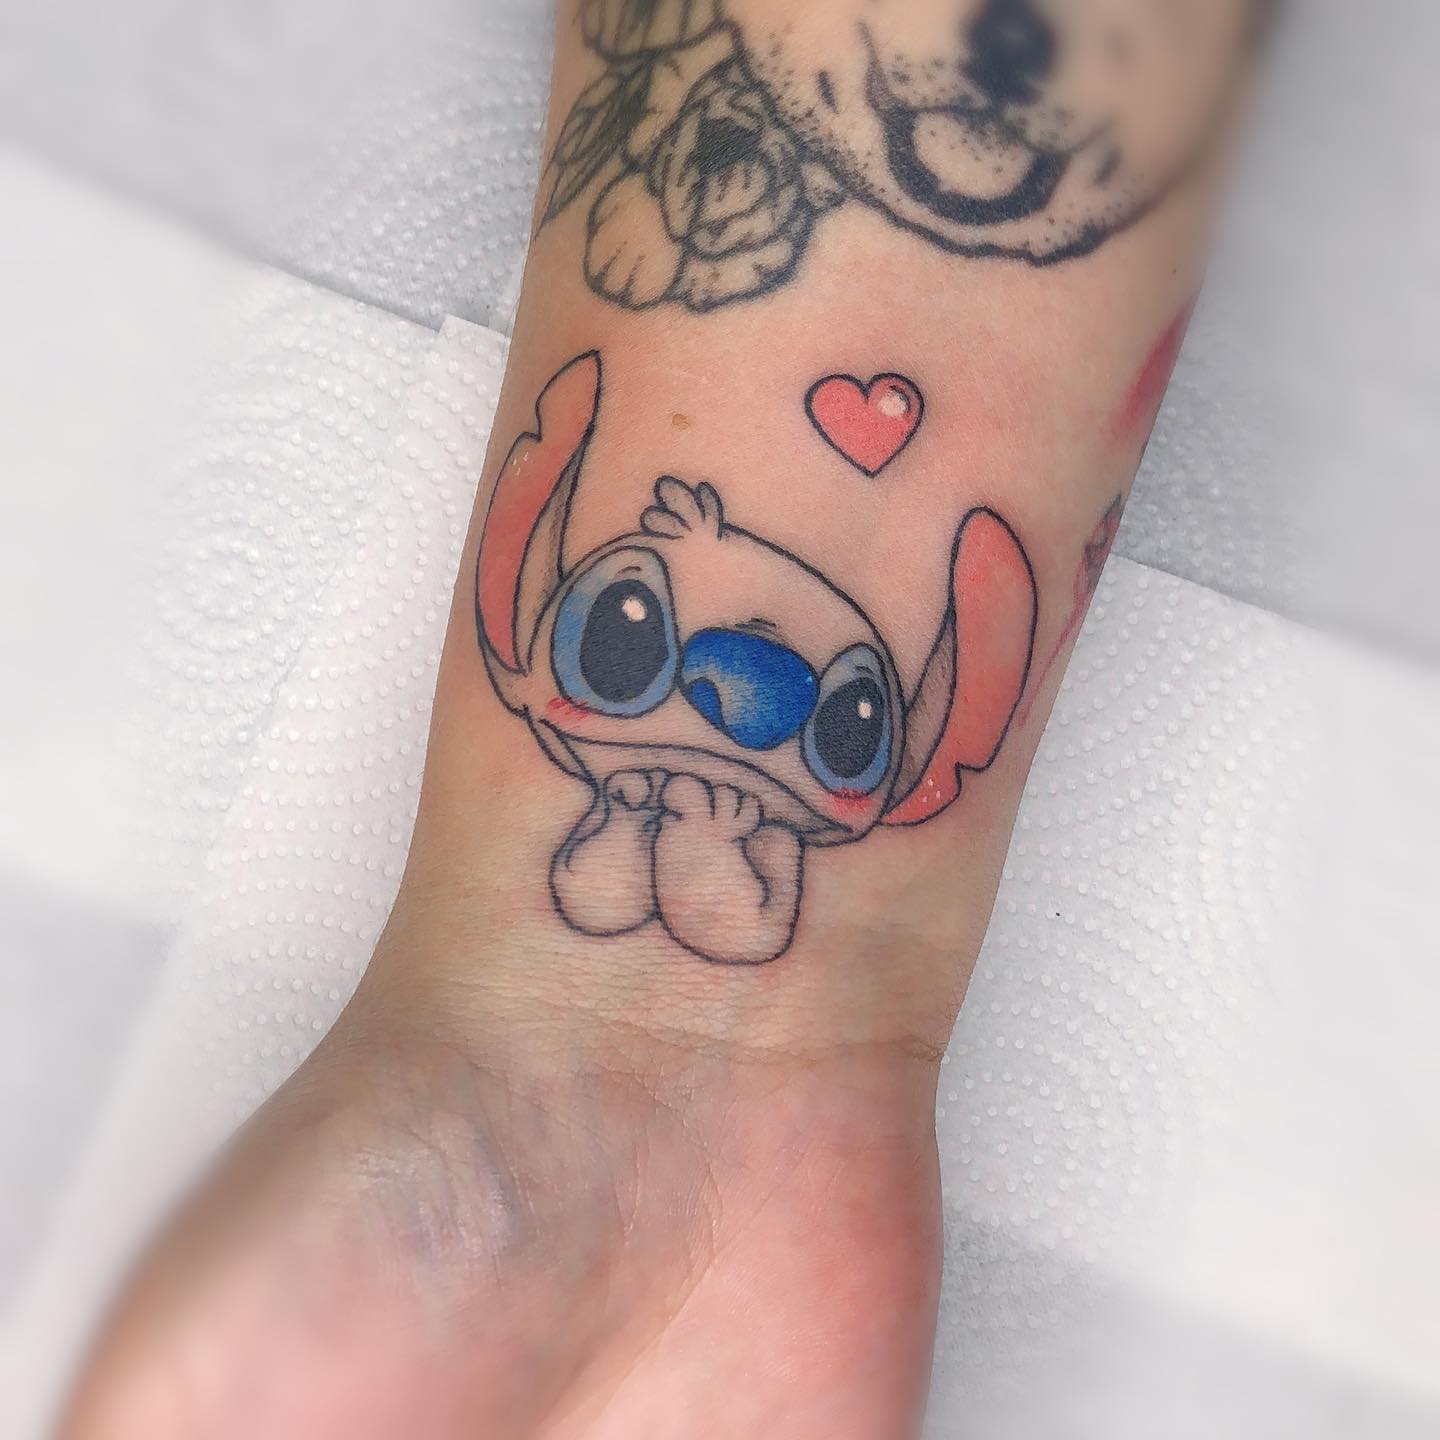 Tatuaje divertido de Stitch en el brazo.